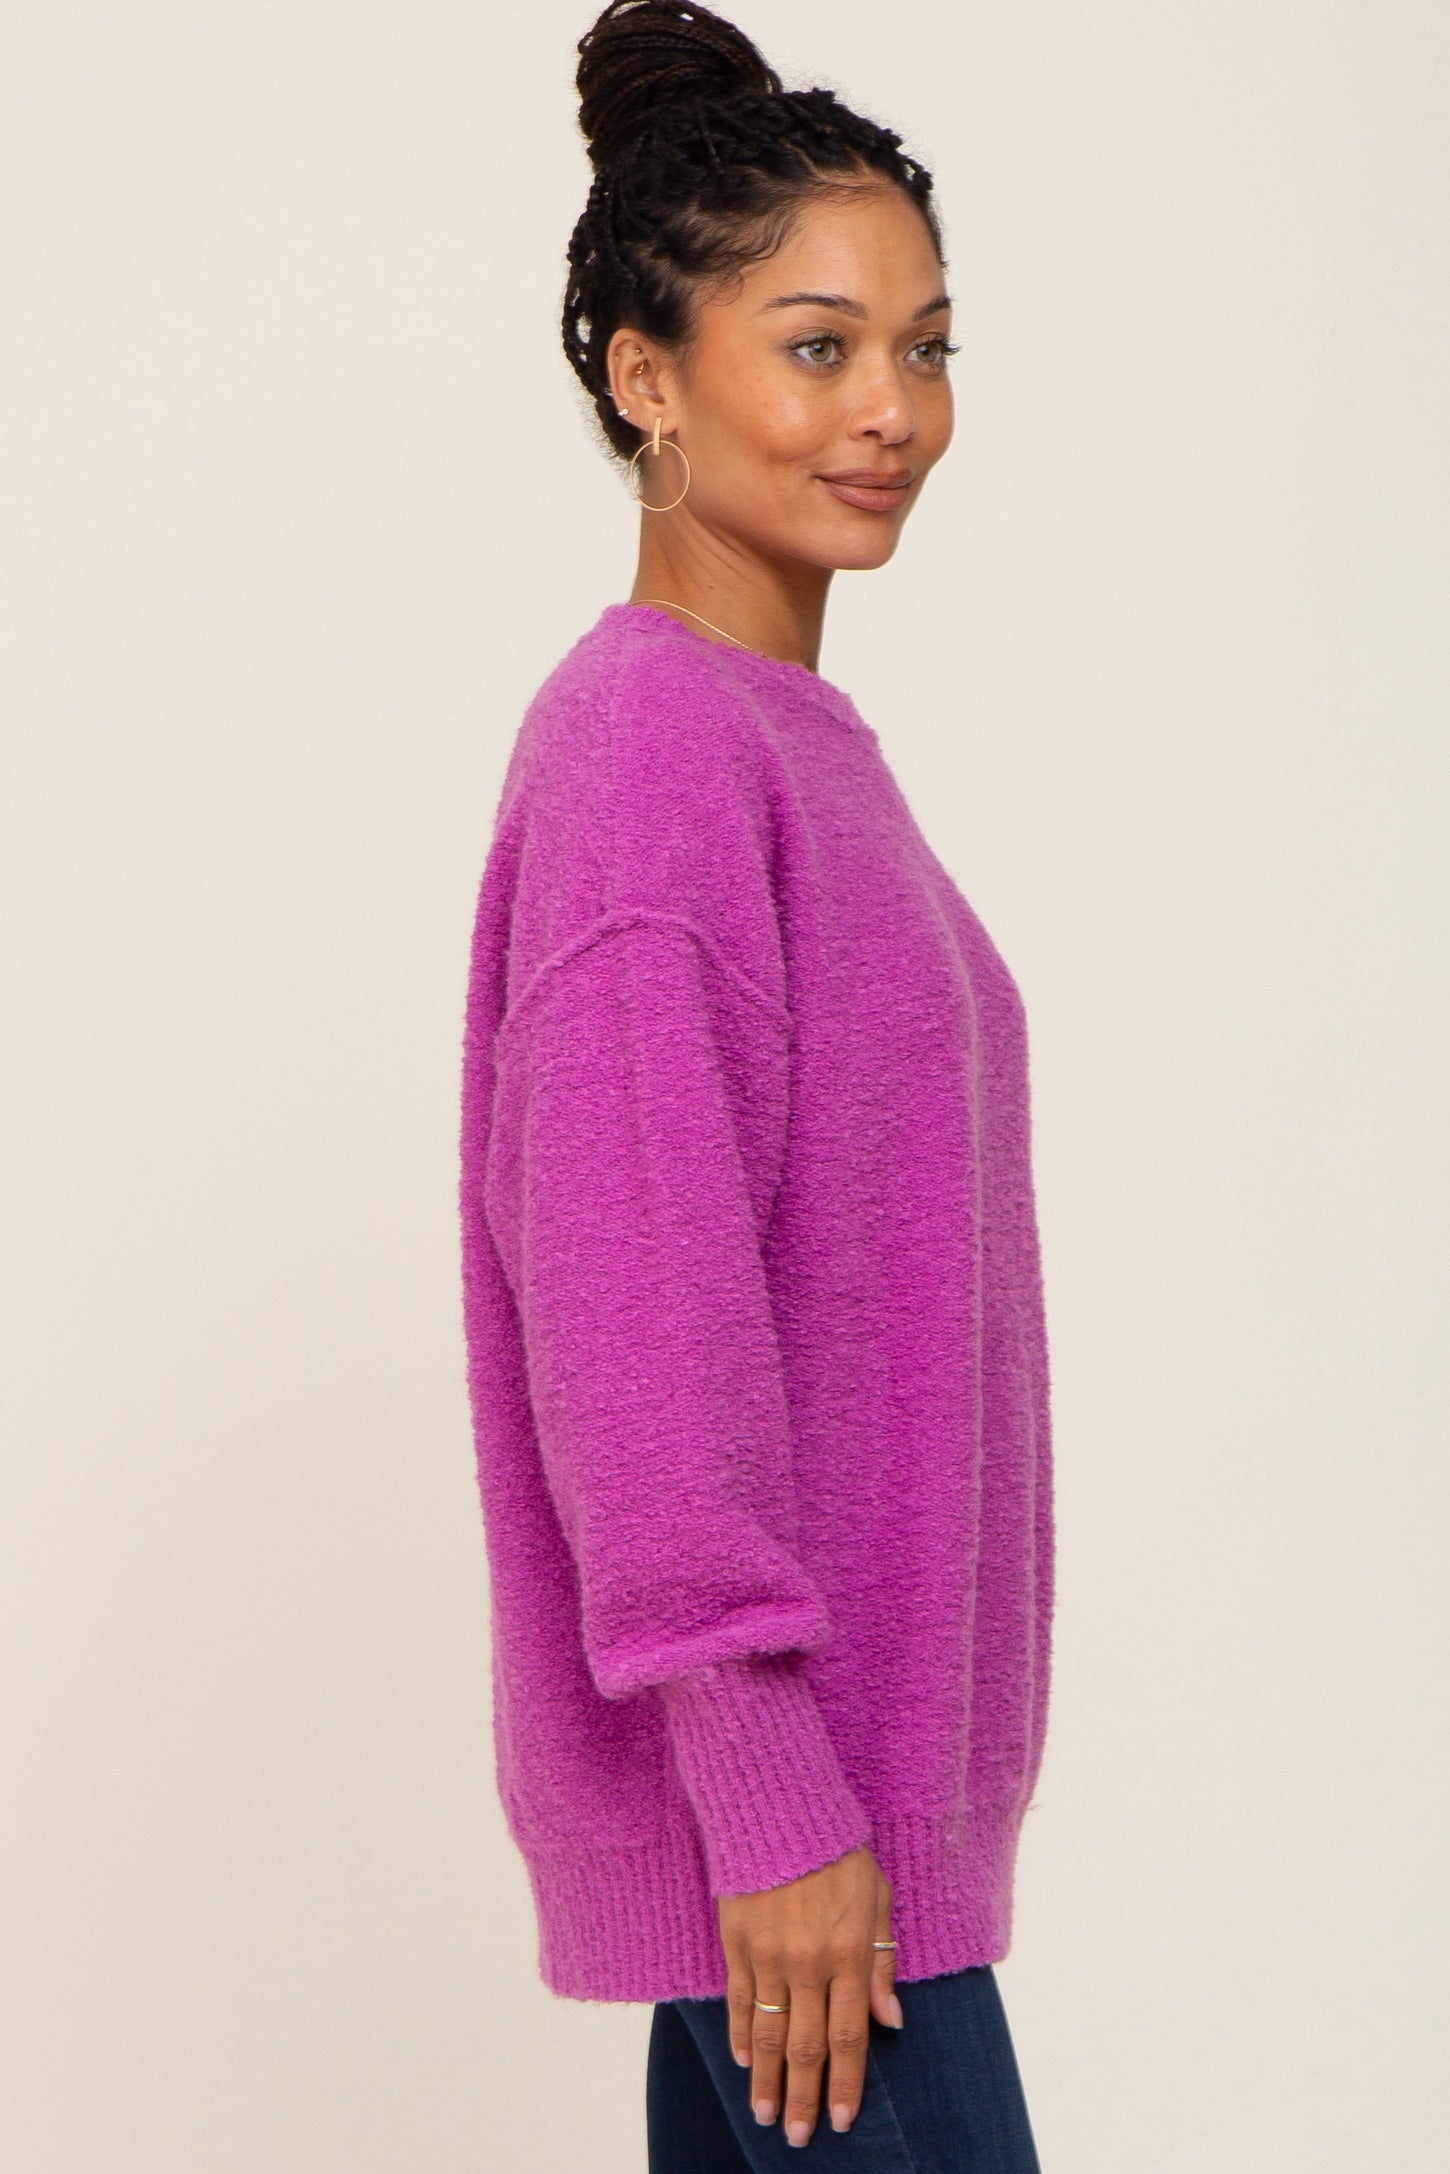 Magenta Fuzzy Knit Sweater